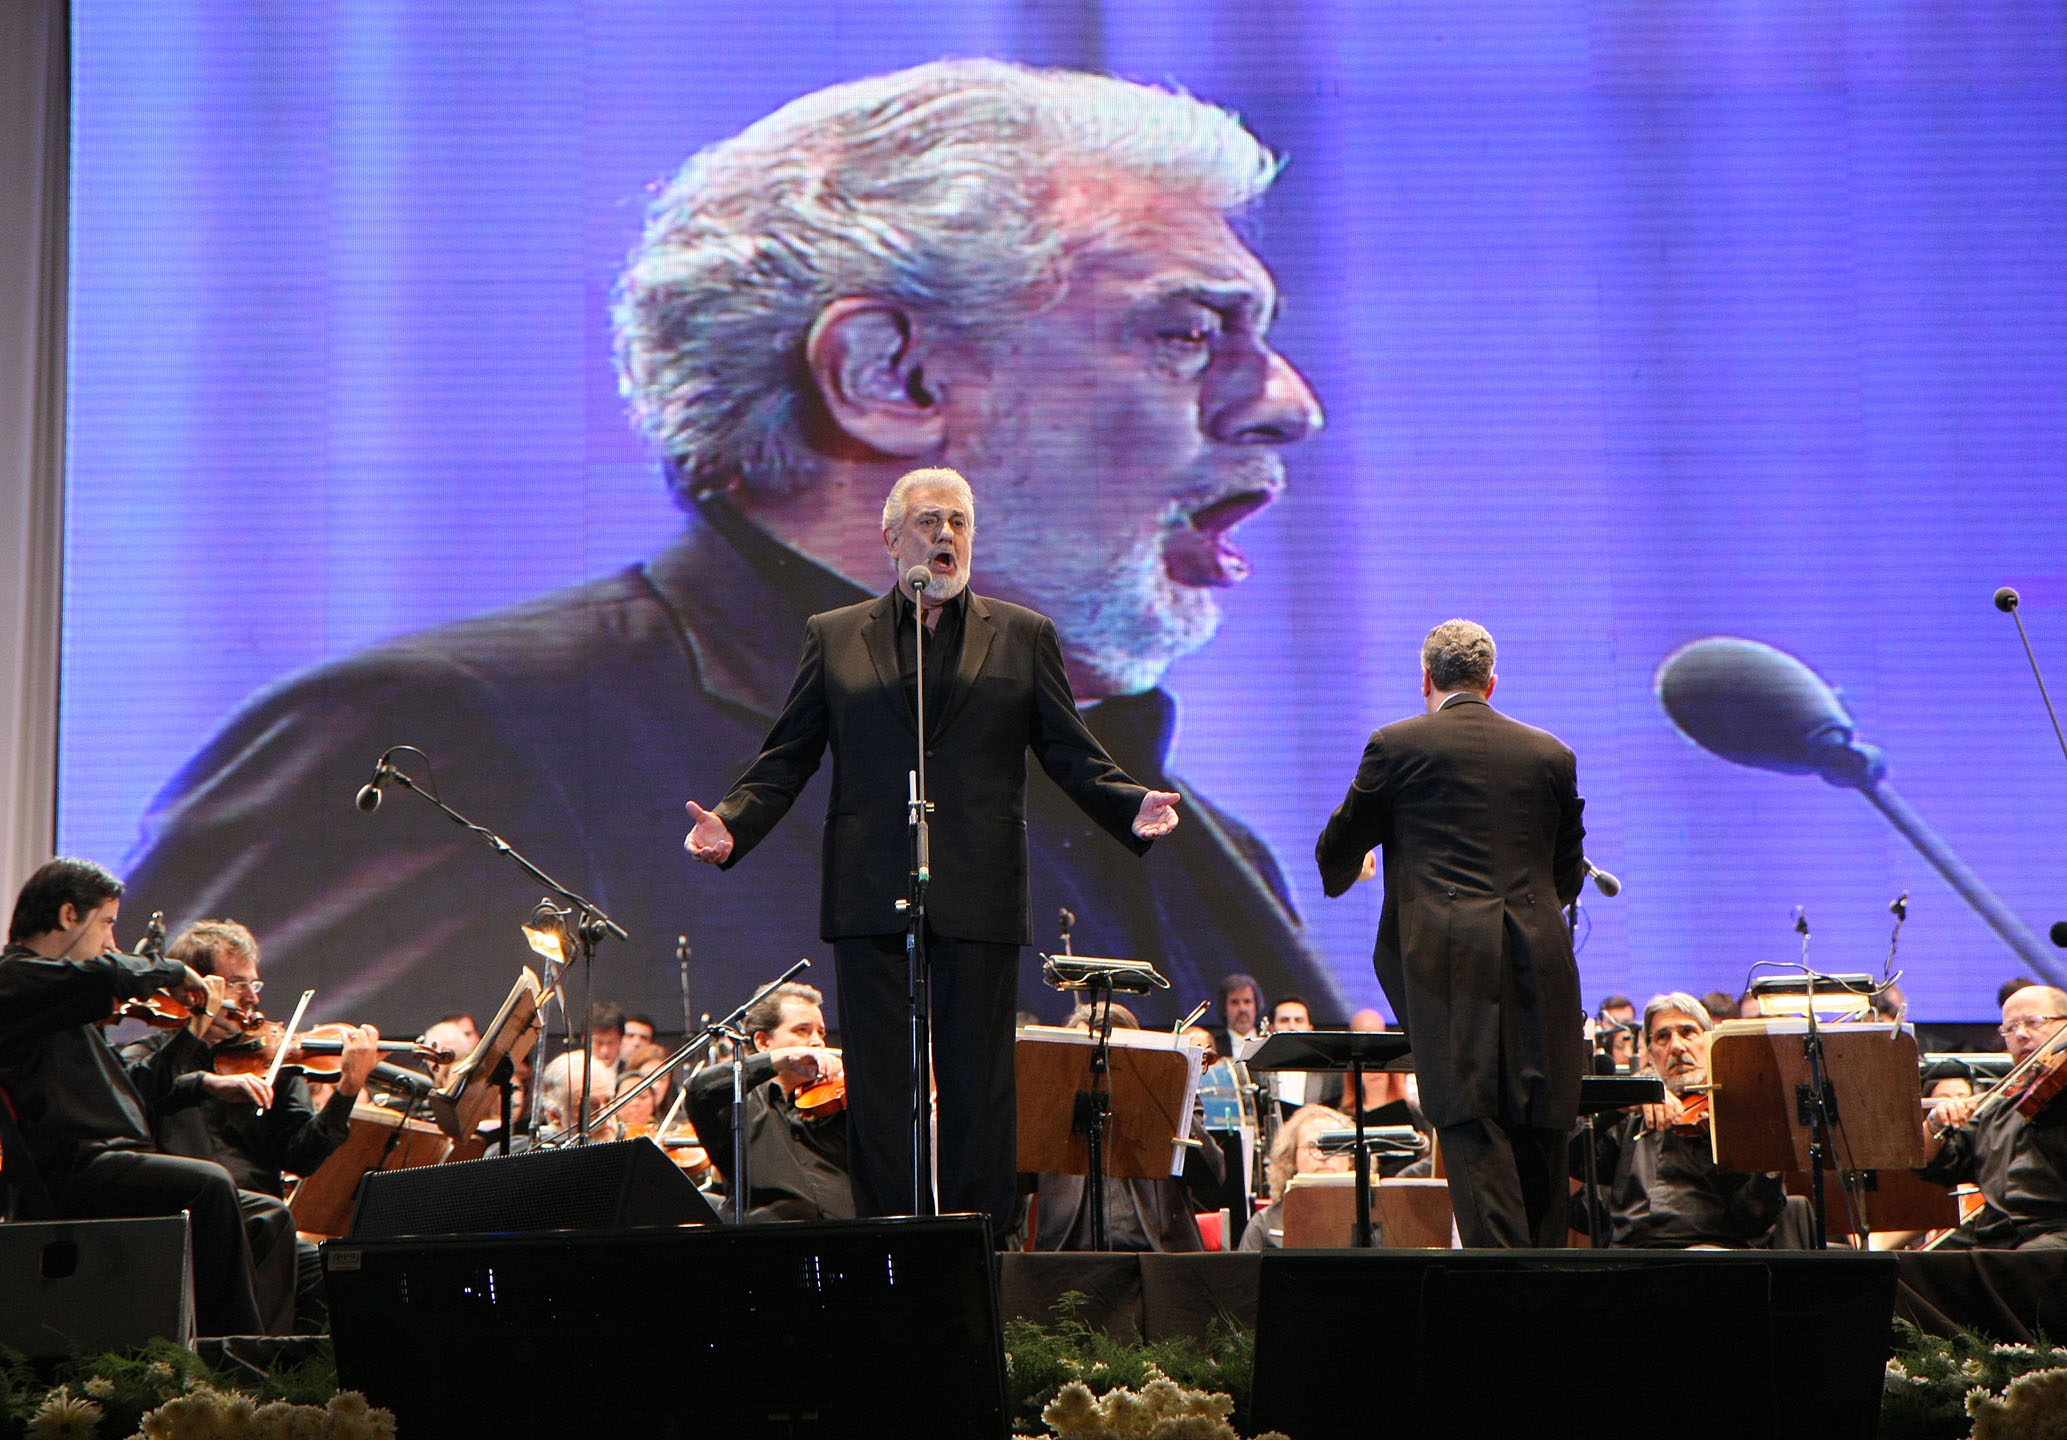 Placido Domingo, Buenos Aires concert 2011